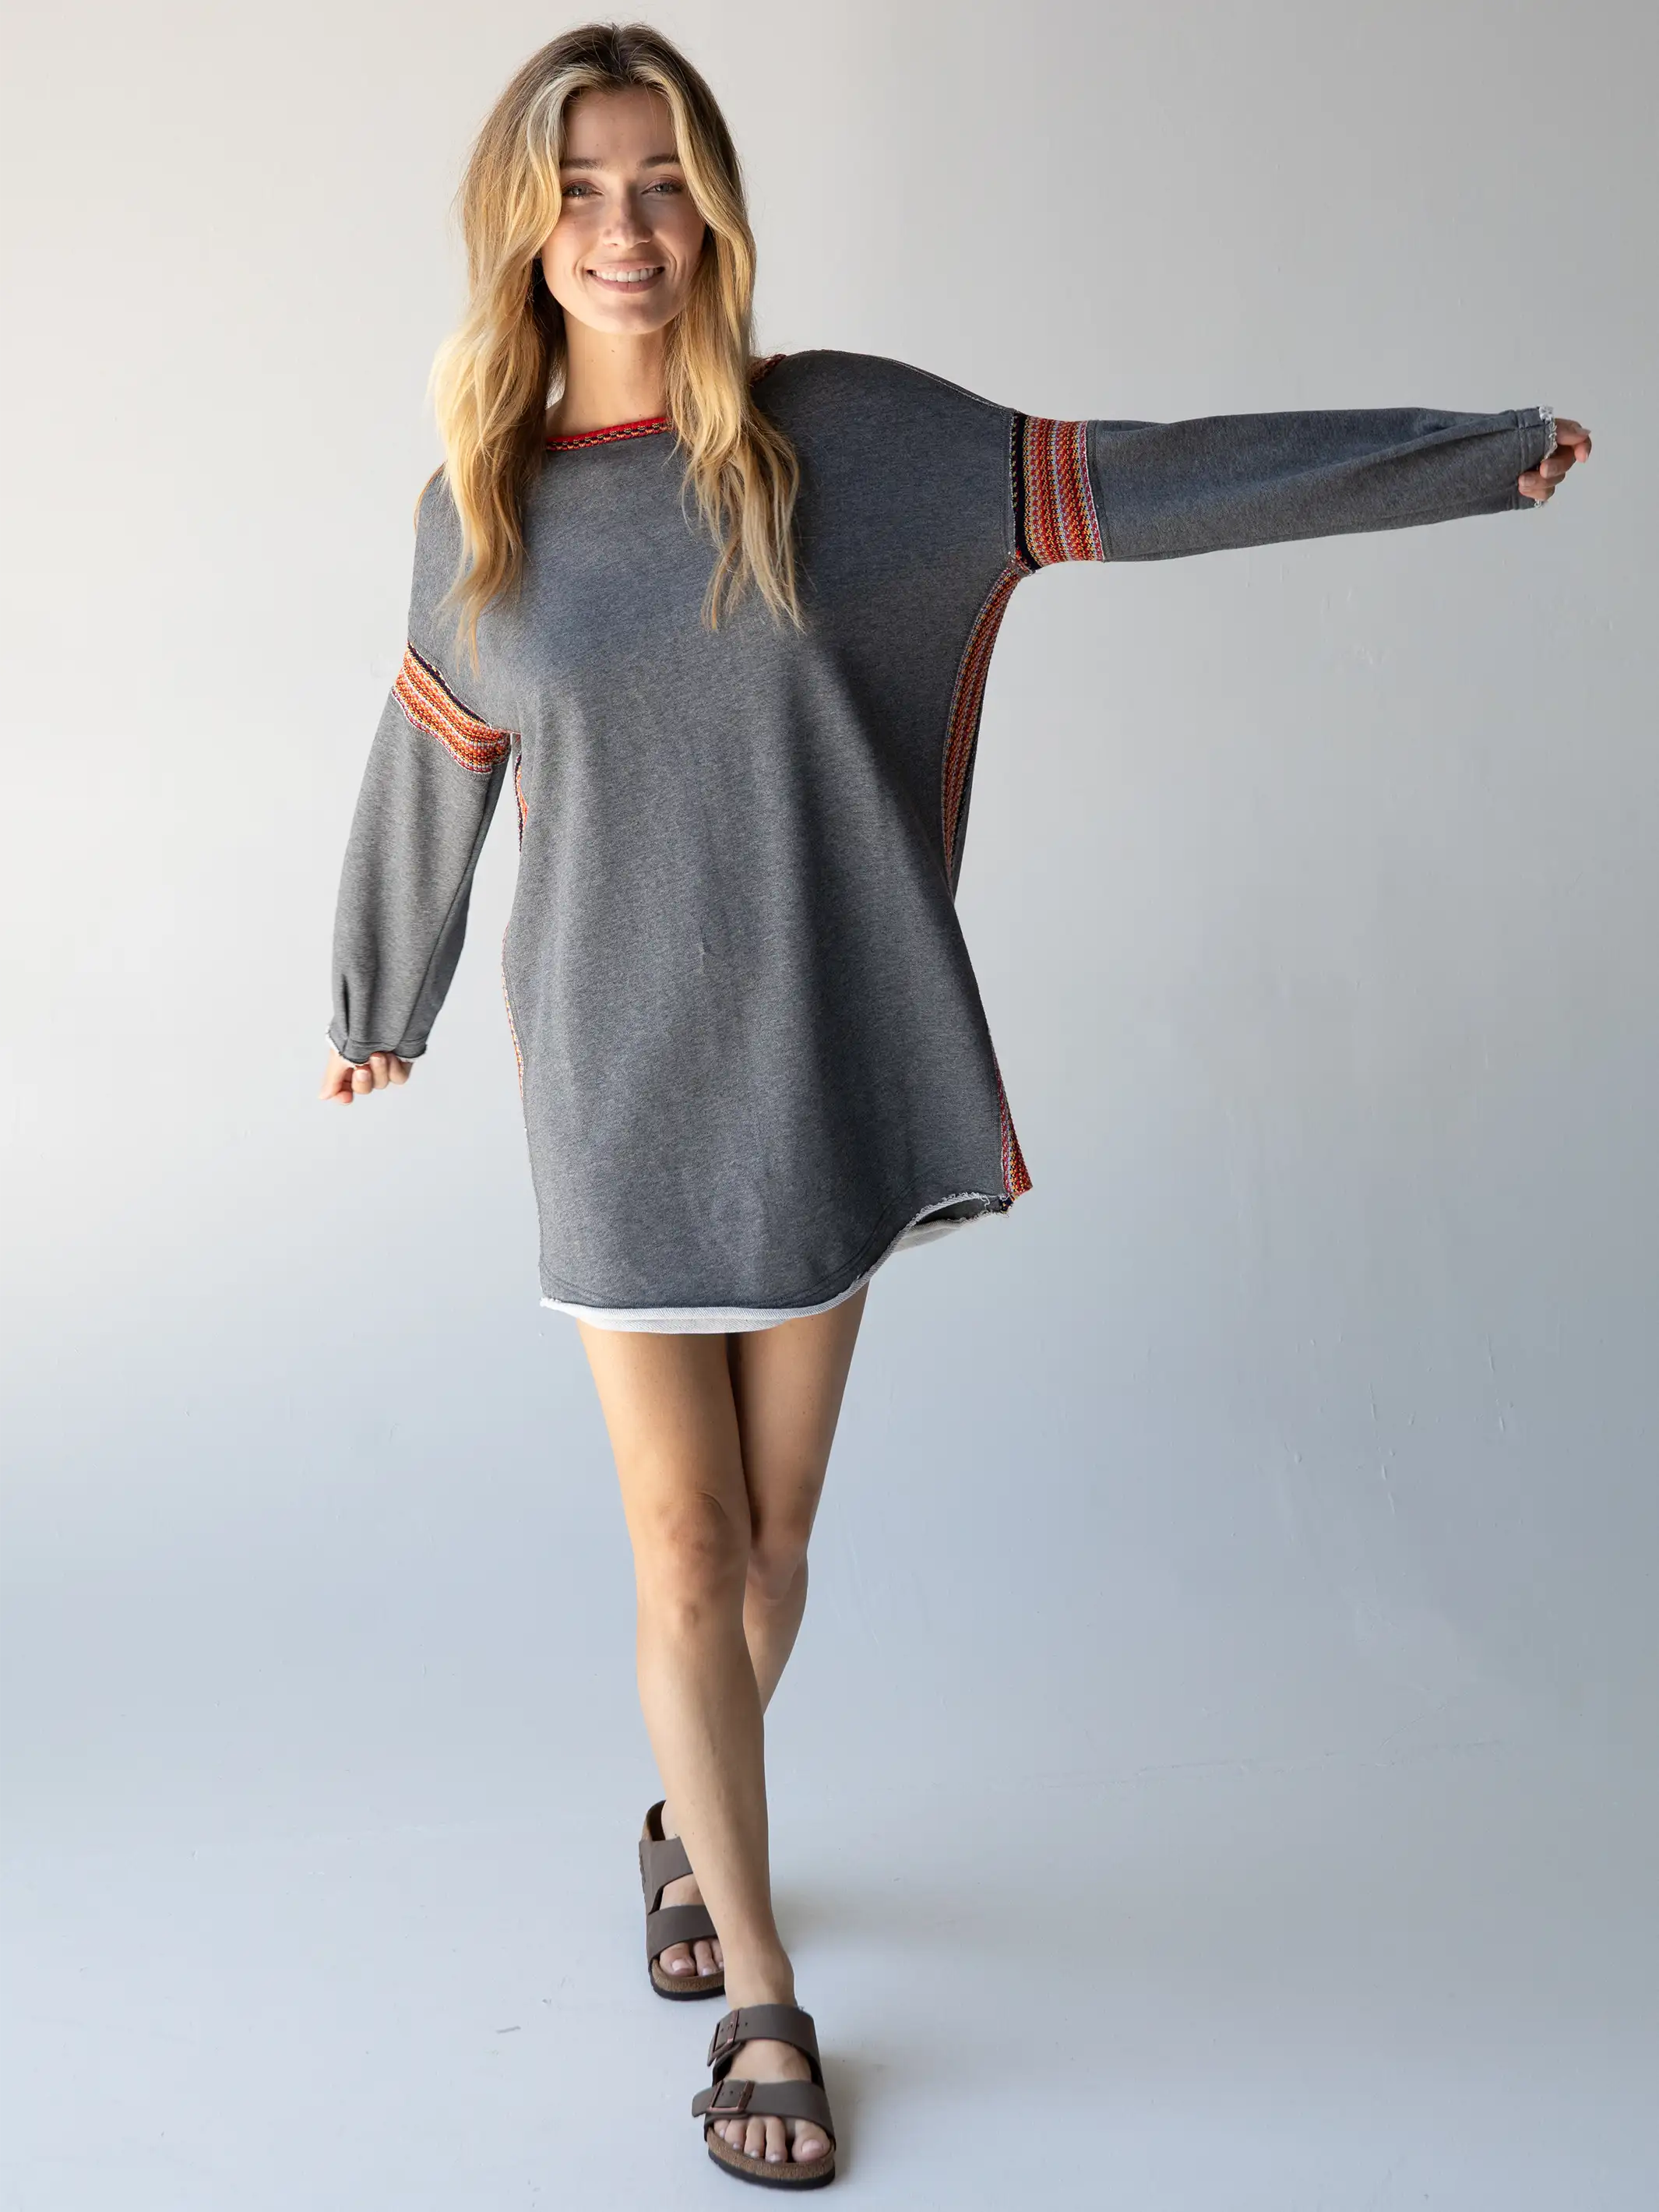 Sexy Heather Grey Two-Piece Dress - Heather Grey Jersey Knit Dress